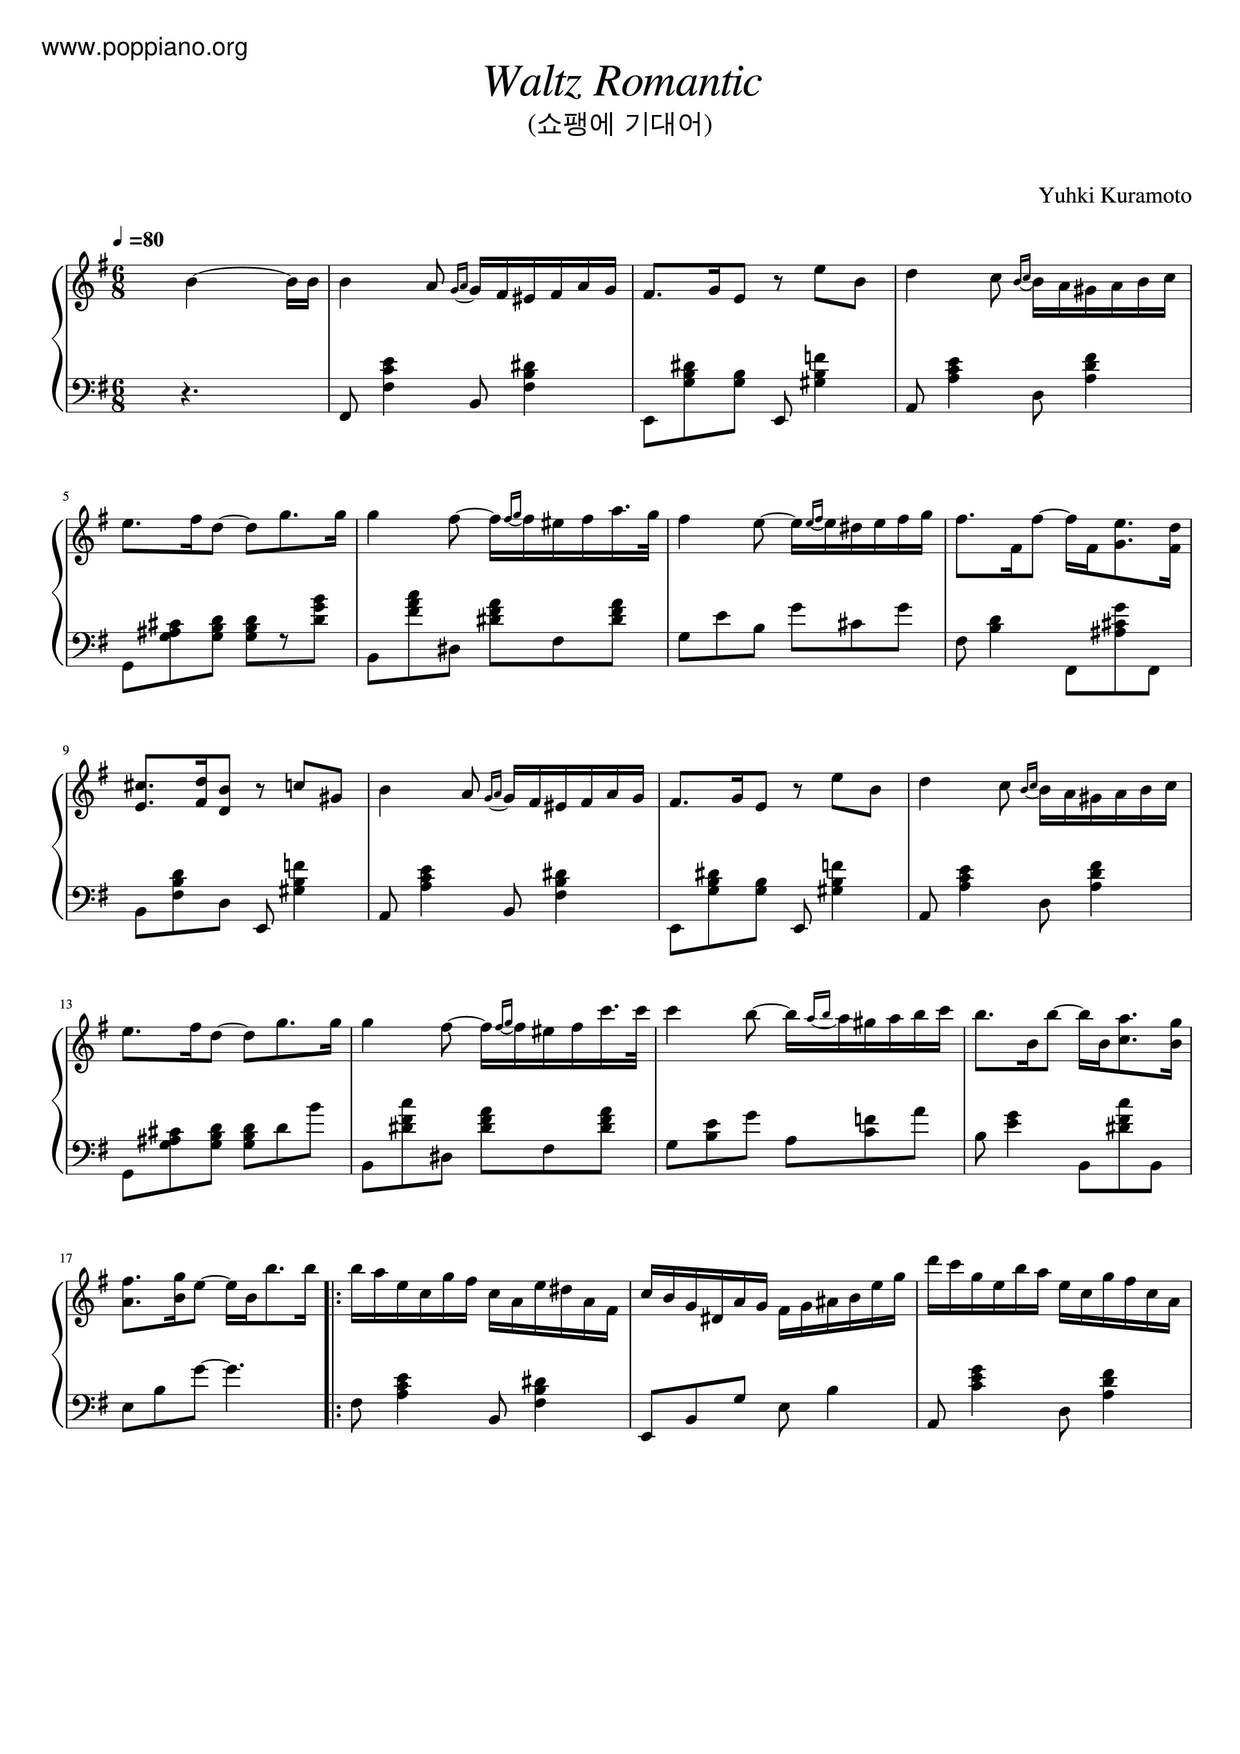 Waltz Romanticピアノ譜